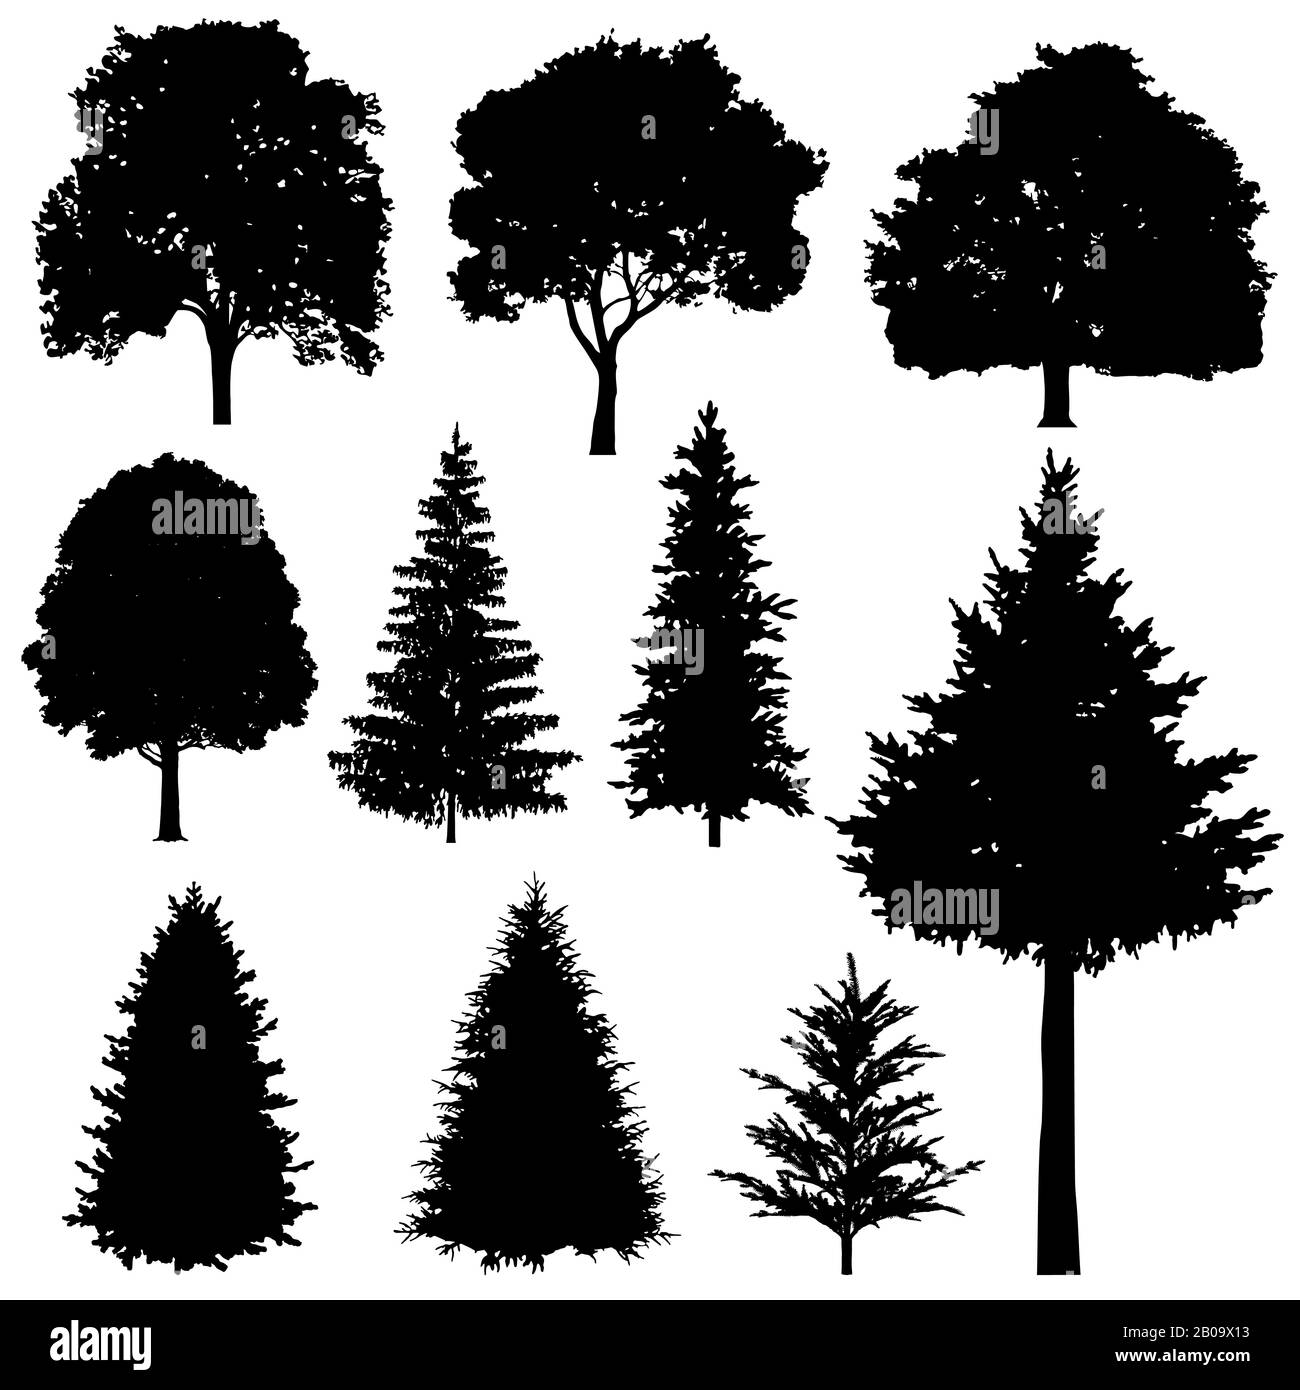 Forêts de feuillus et de feuillus sapins vectoriels silhouettes ensemble. Plante d'arbre Evergreen, illustration de l'arbre de bois silhouette Illustration de Vecteur